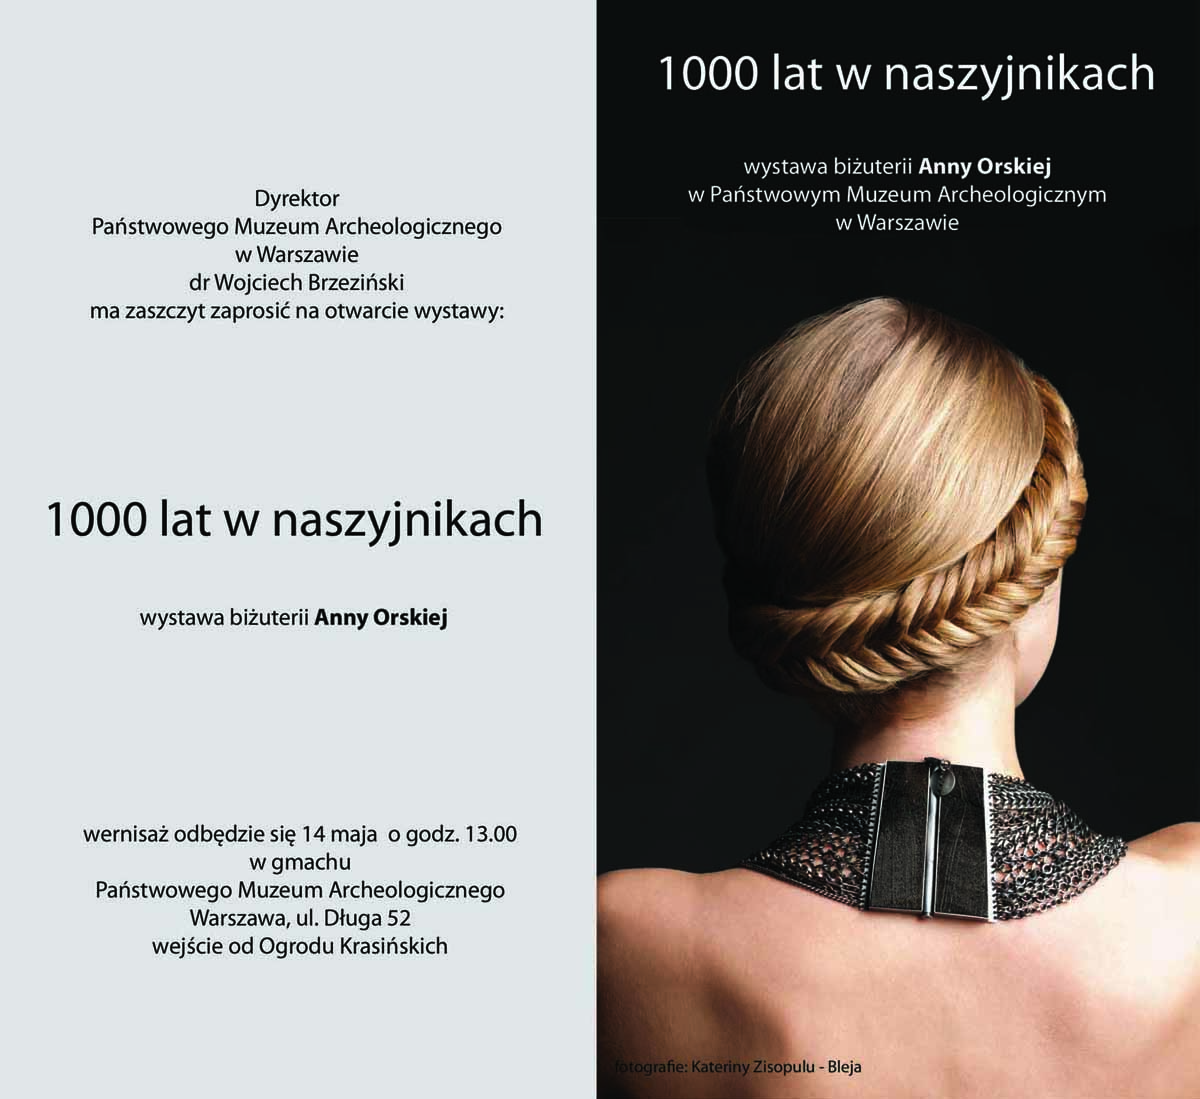 „1000 lat w naszyjnikach. Wystawa biżuterii Anny Orskiej”, zaproszenie, fot. Katerina Zisopulu-Bleja (źródło: materiały prasowe)